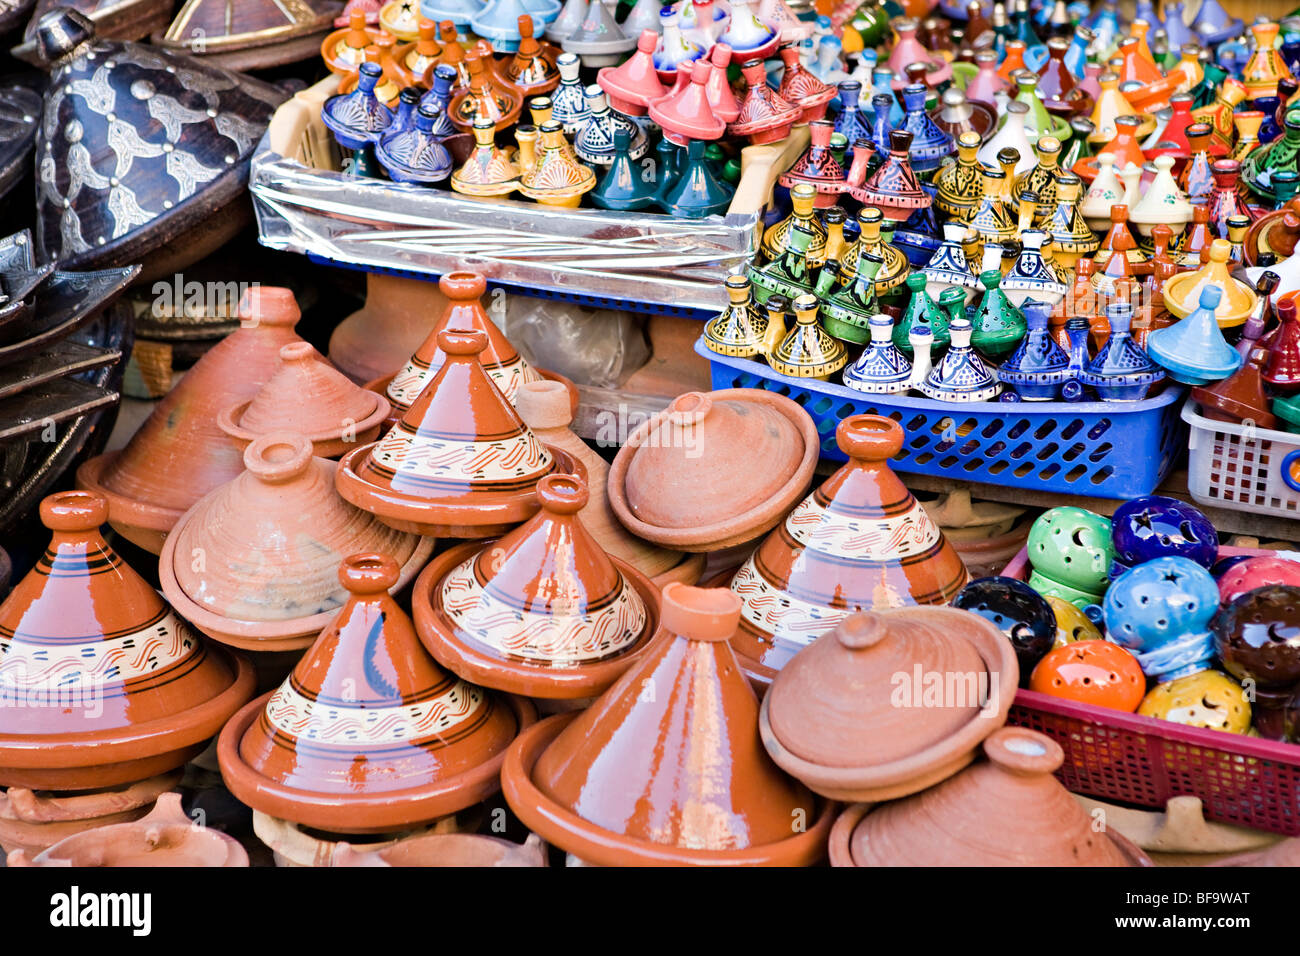 Moroccan souvenirs, at Marrakech Medina market Stock Photo